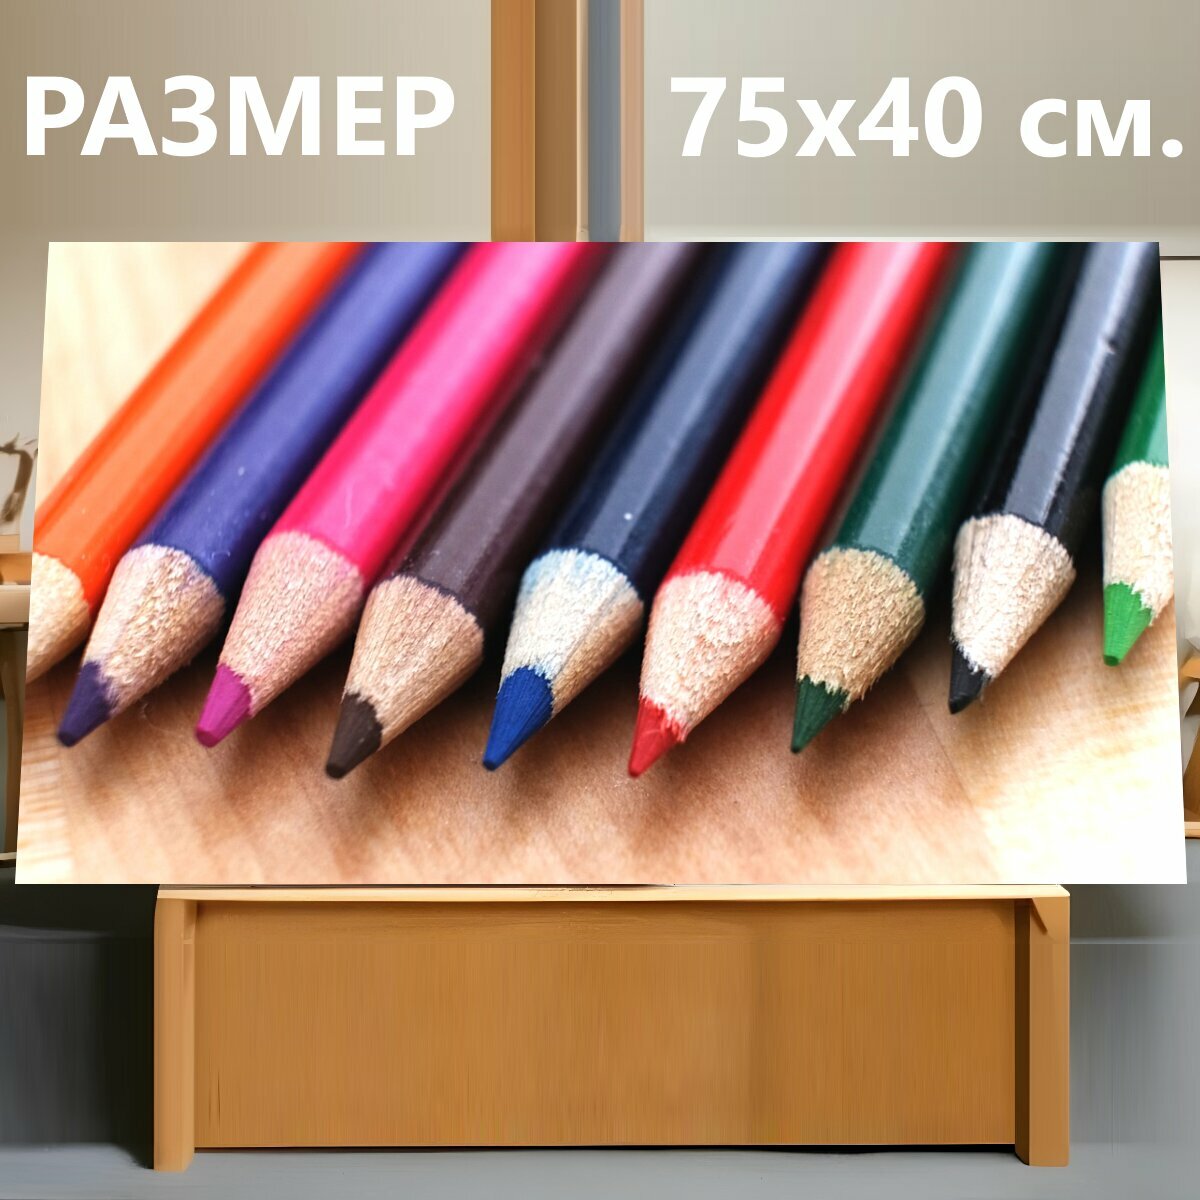 Картина на холсте "Карандаш, образование, цветной карандаш" на подрамнике 75х40 см. для интерьера